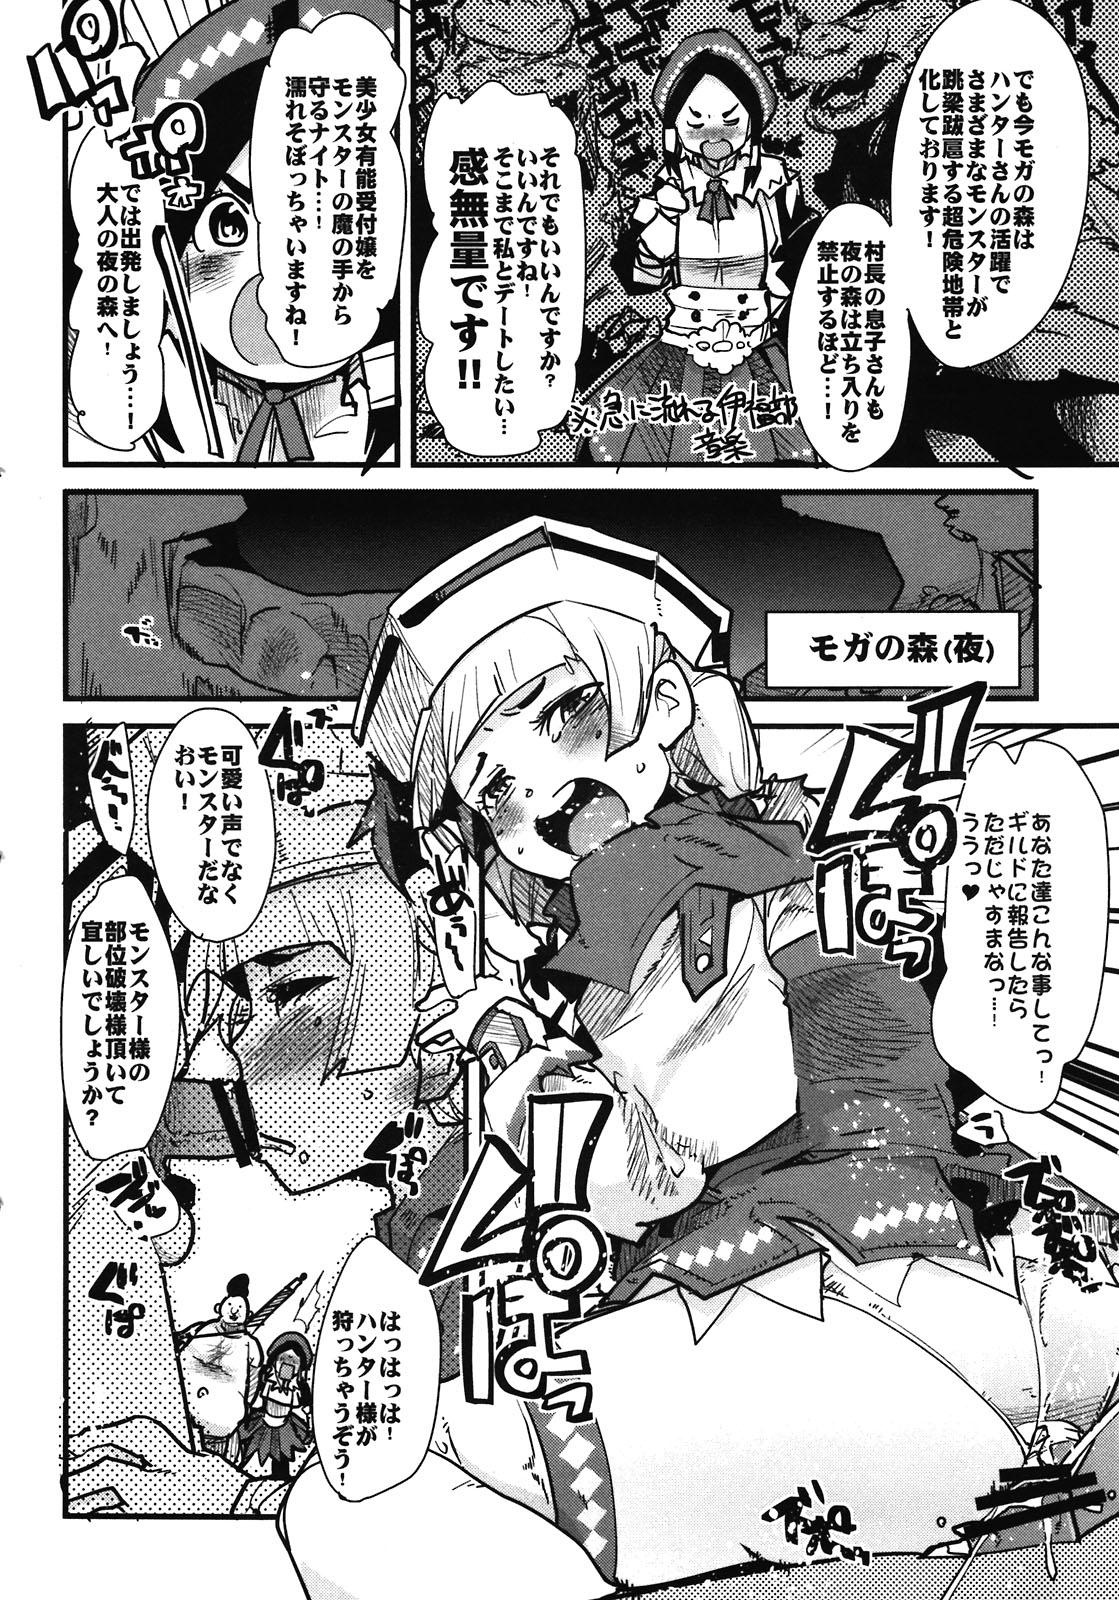 Pissing Suteki Kanbanmusume 2 - Monster hunter Rubbing - Page 4